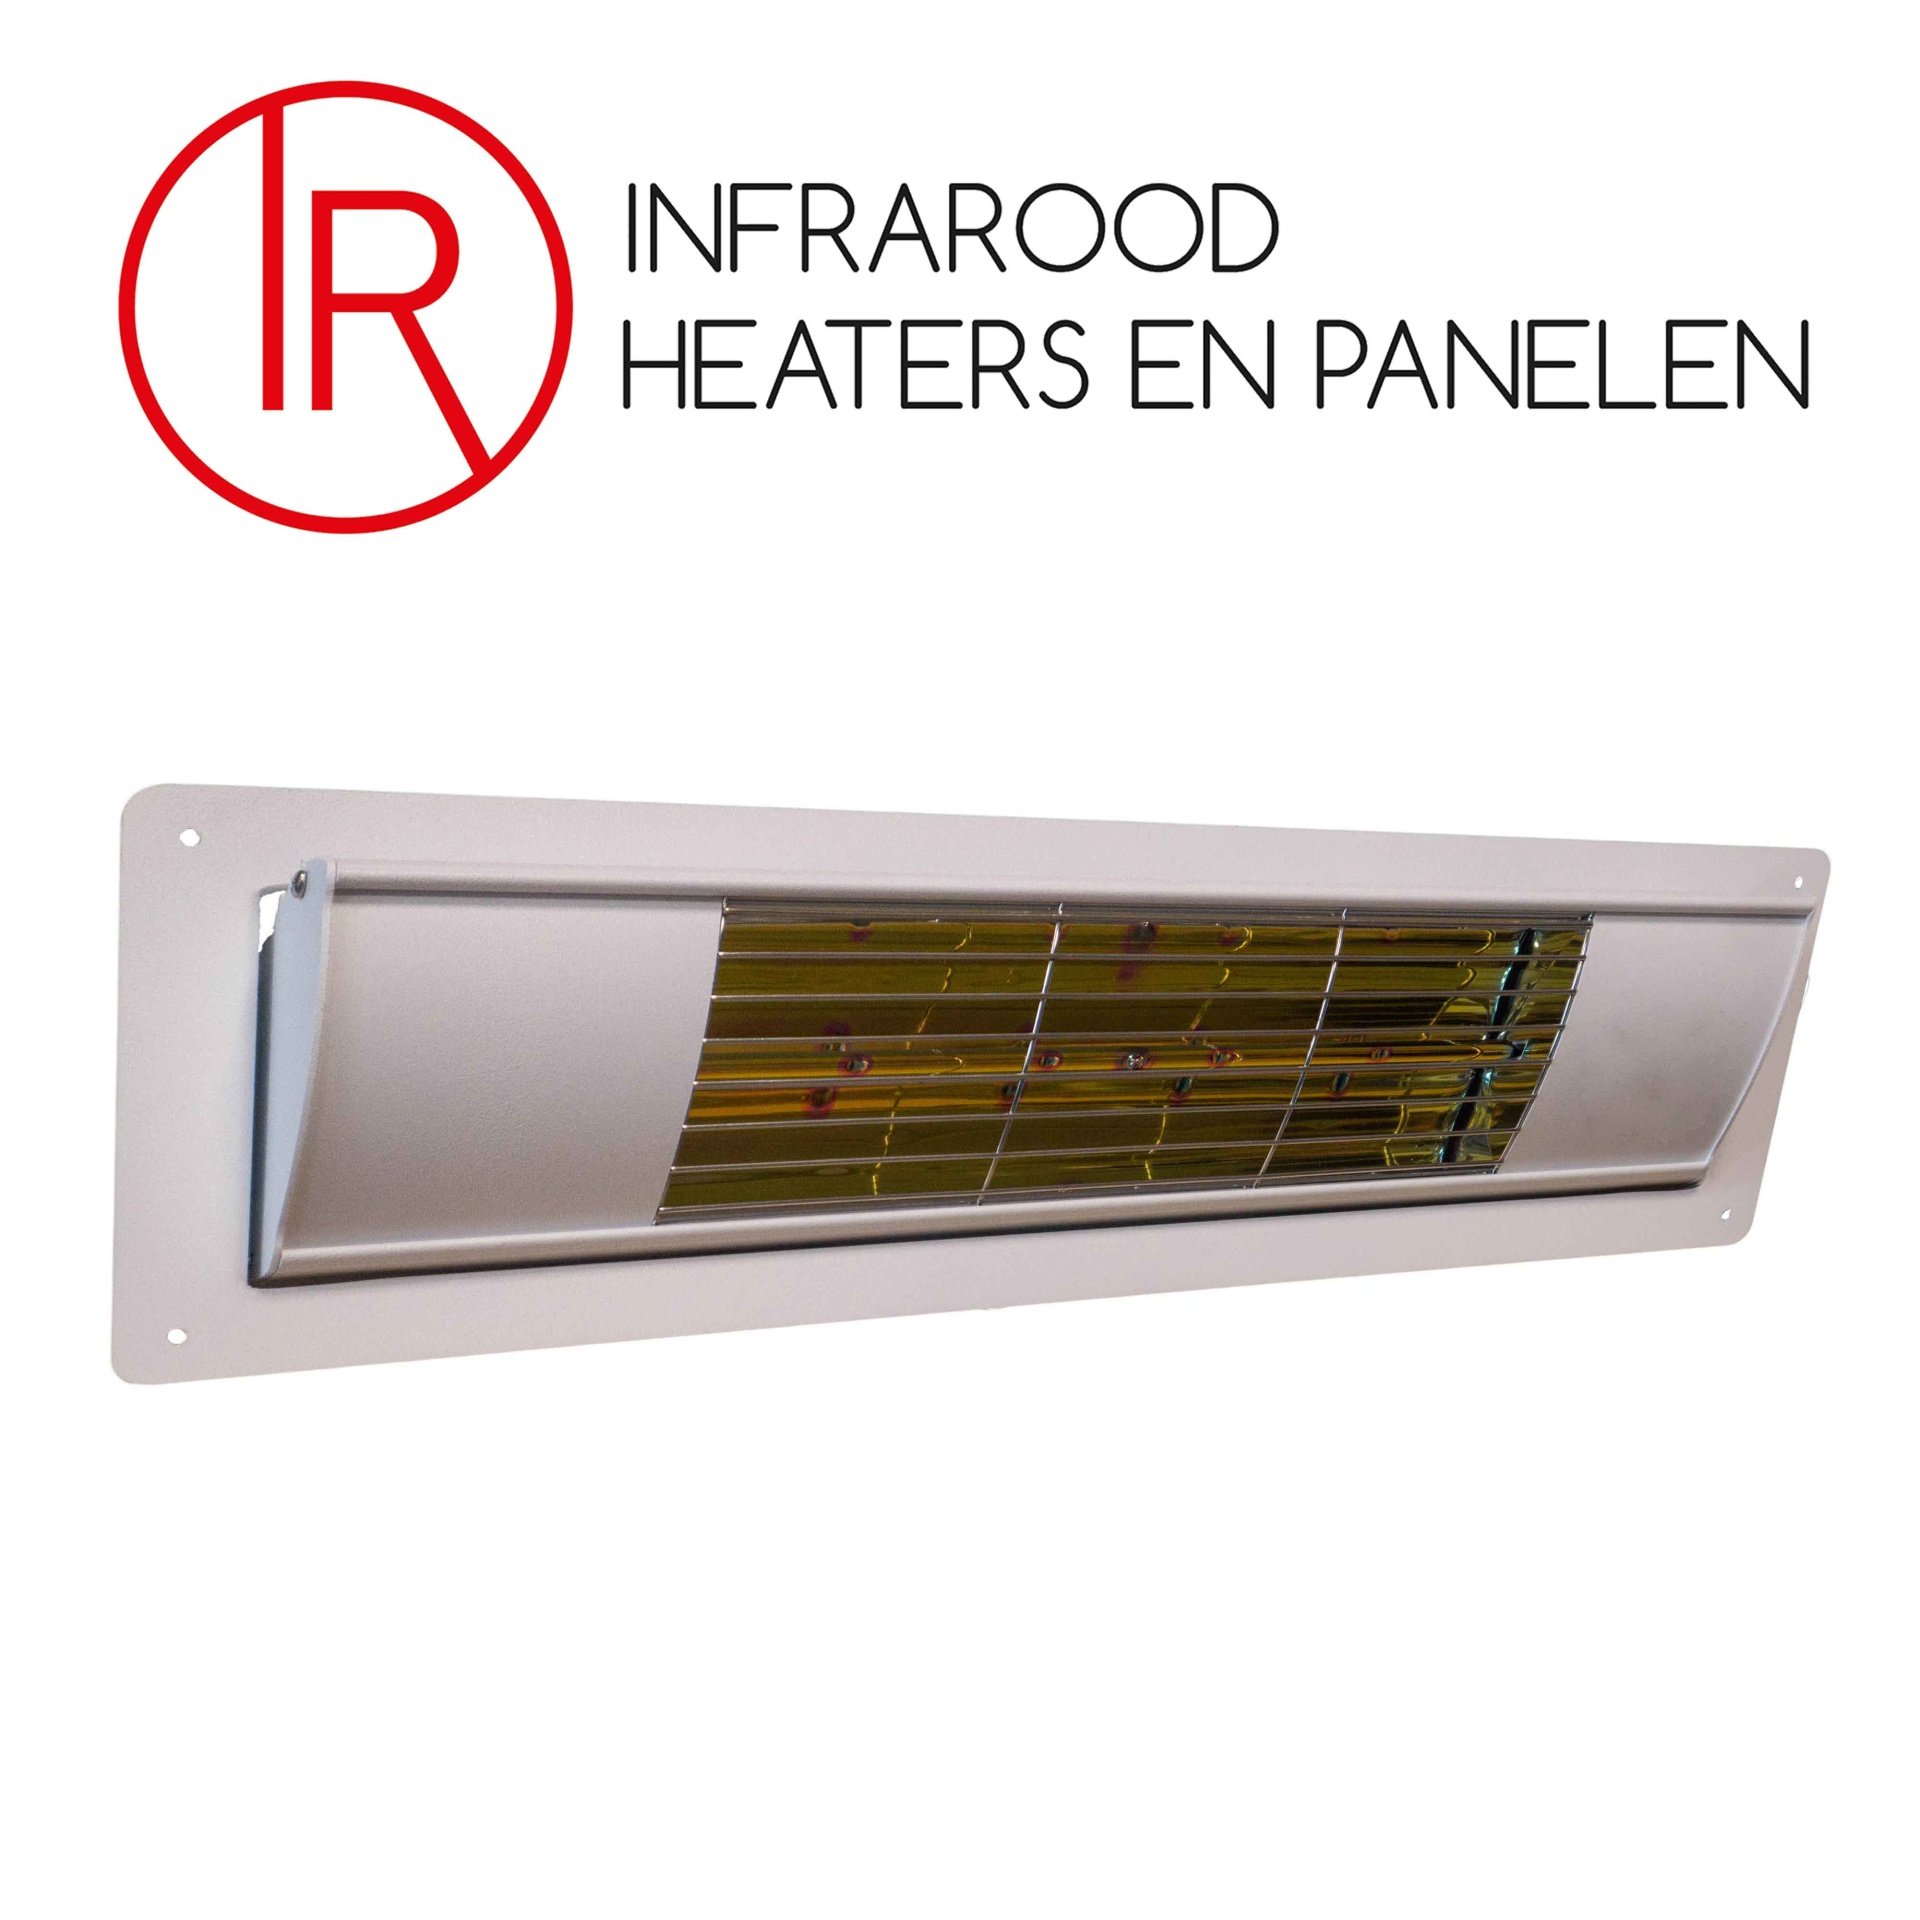 Aqua Inbouw Infraroodheater | Infrarood Heaters en Panelen